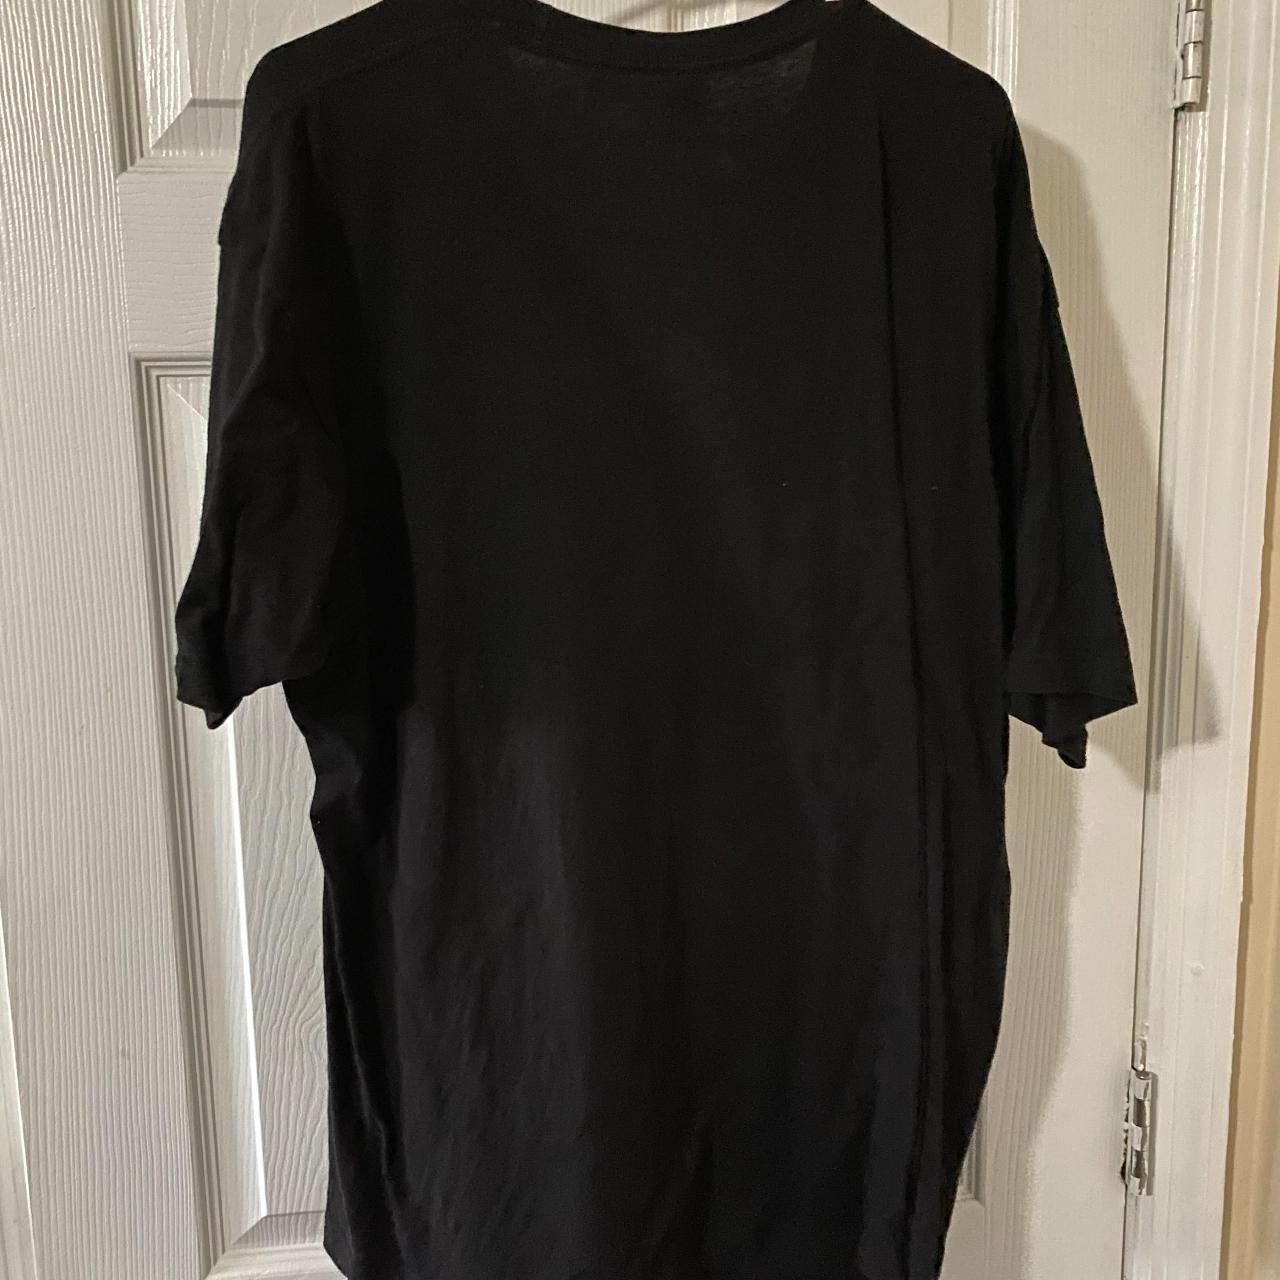 Product Image 4 - Marvel Black Panther Wakanda T-Shirt
Tultex